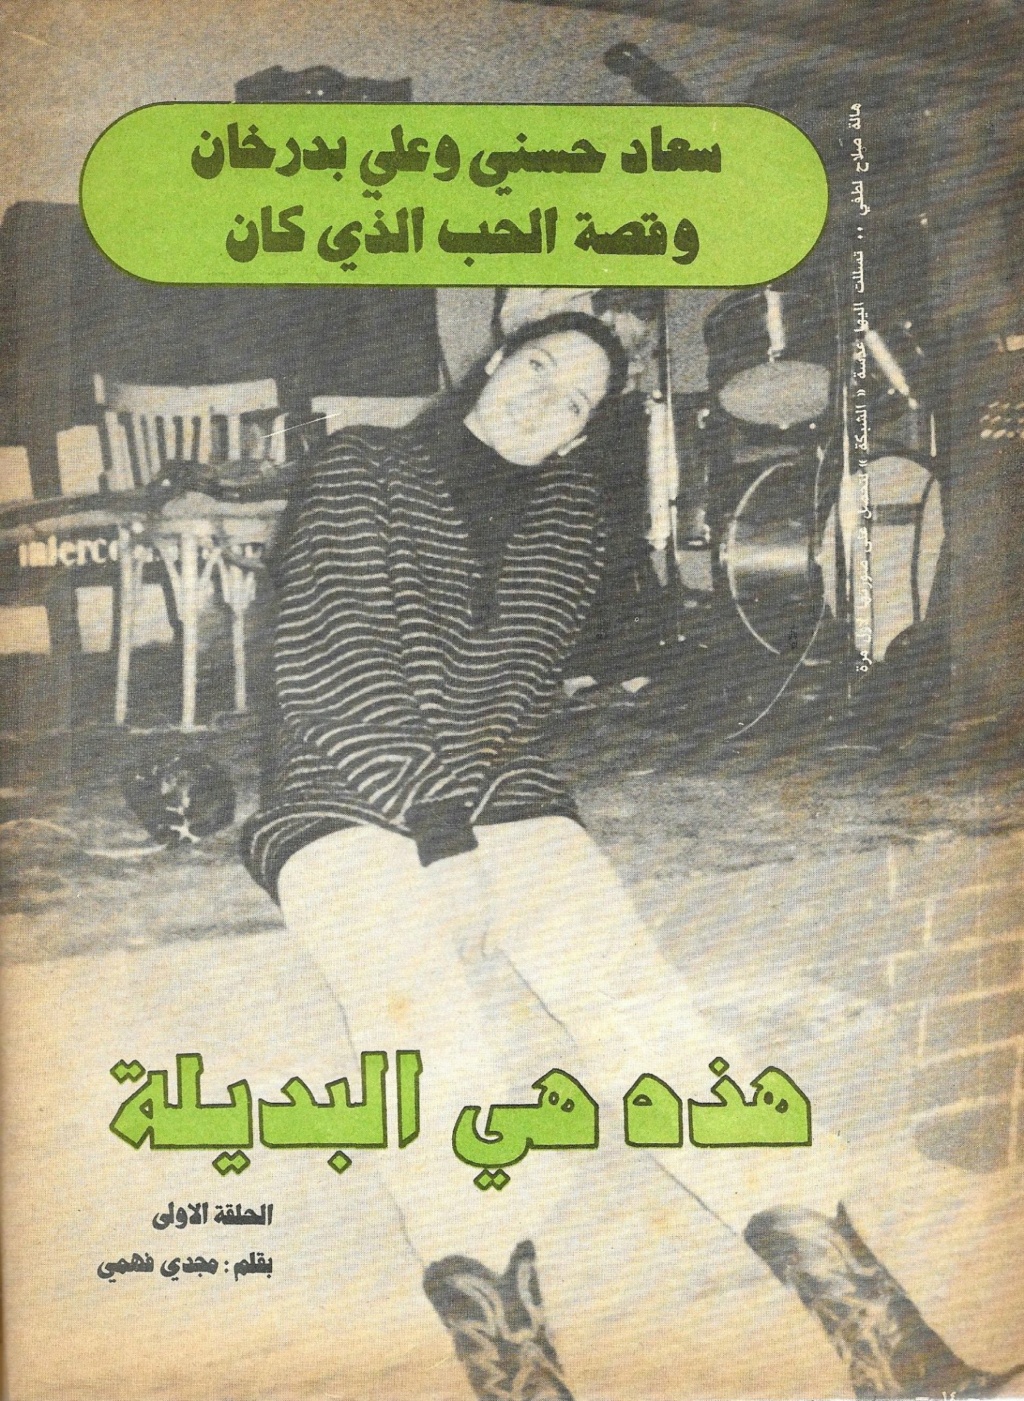 الحب - مقال صحفي : سعاد حسني وعلي بدرخان وقصة الحب الذي كان 1981 م 145